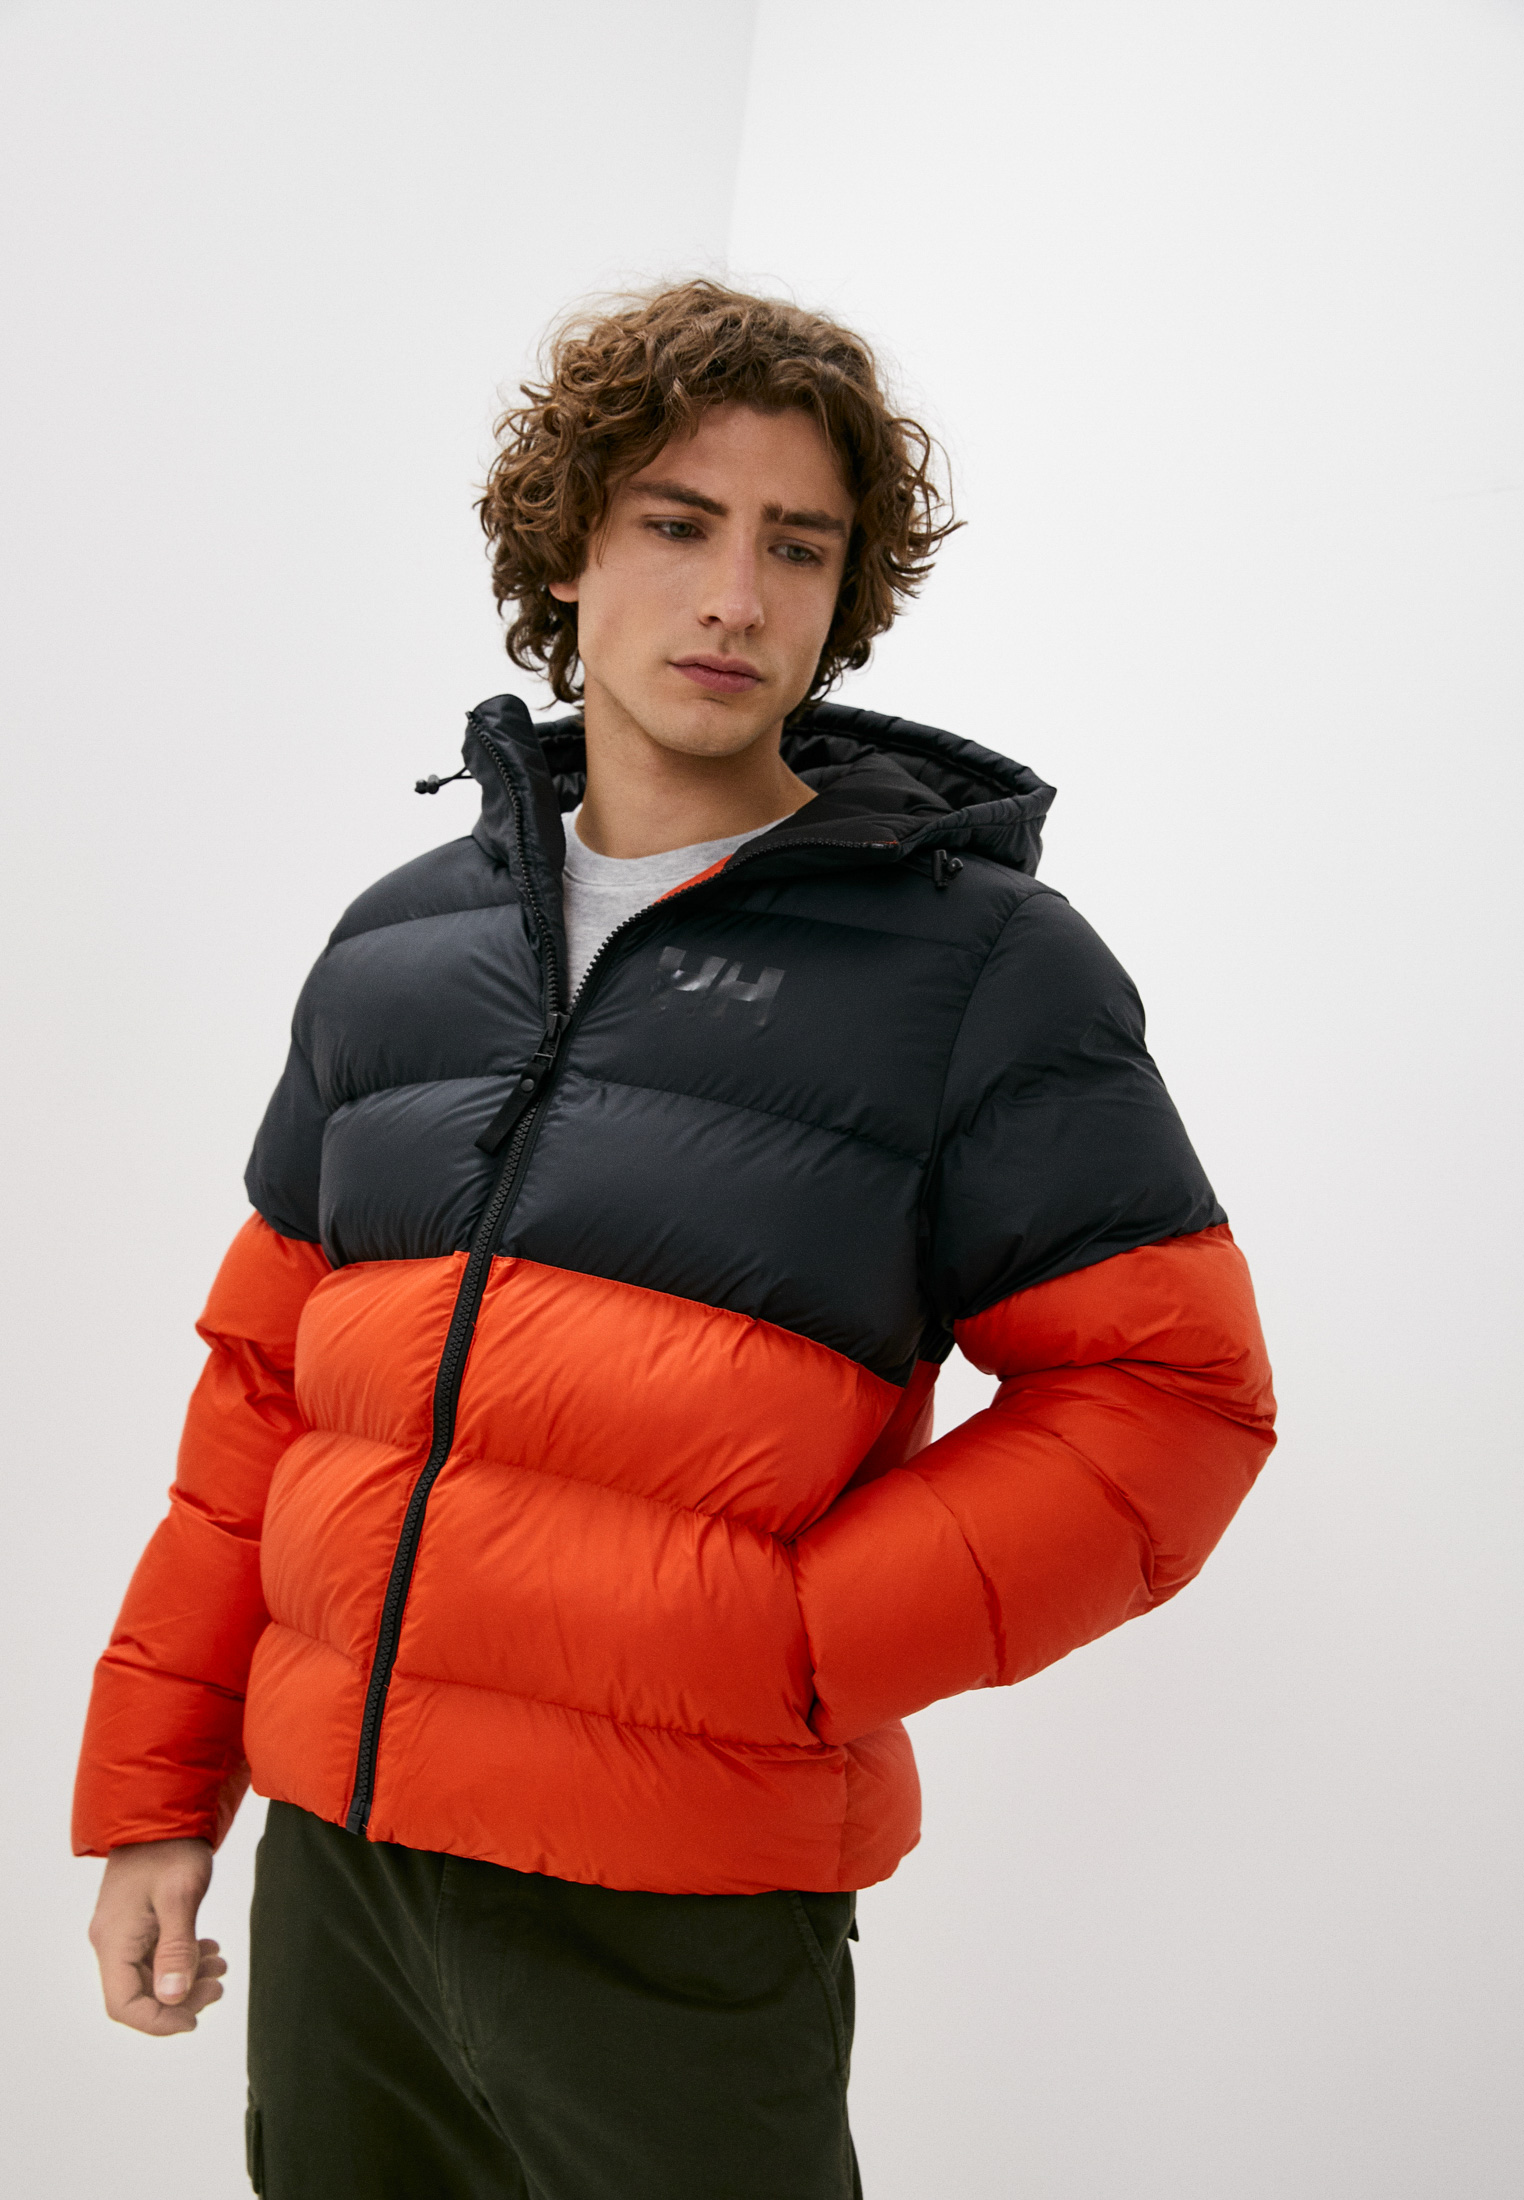 Куртка утепленная Helly Hansen ACTIVE PUFFY JACKET, цвет: оранжевый, RTLABA286201 — купить в интернет-магазине Lamoda